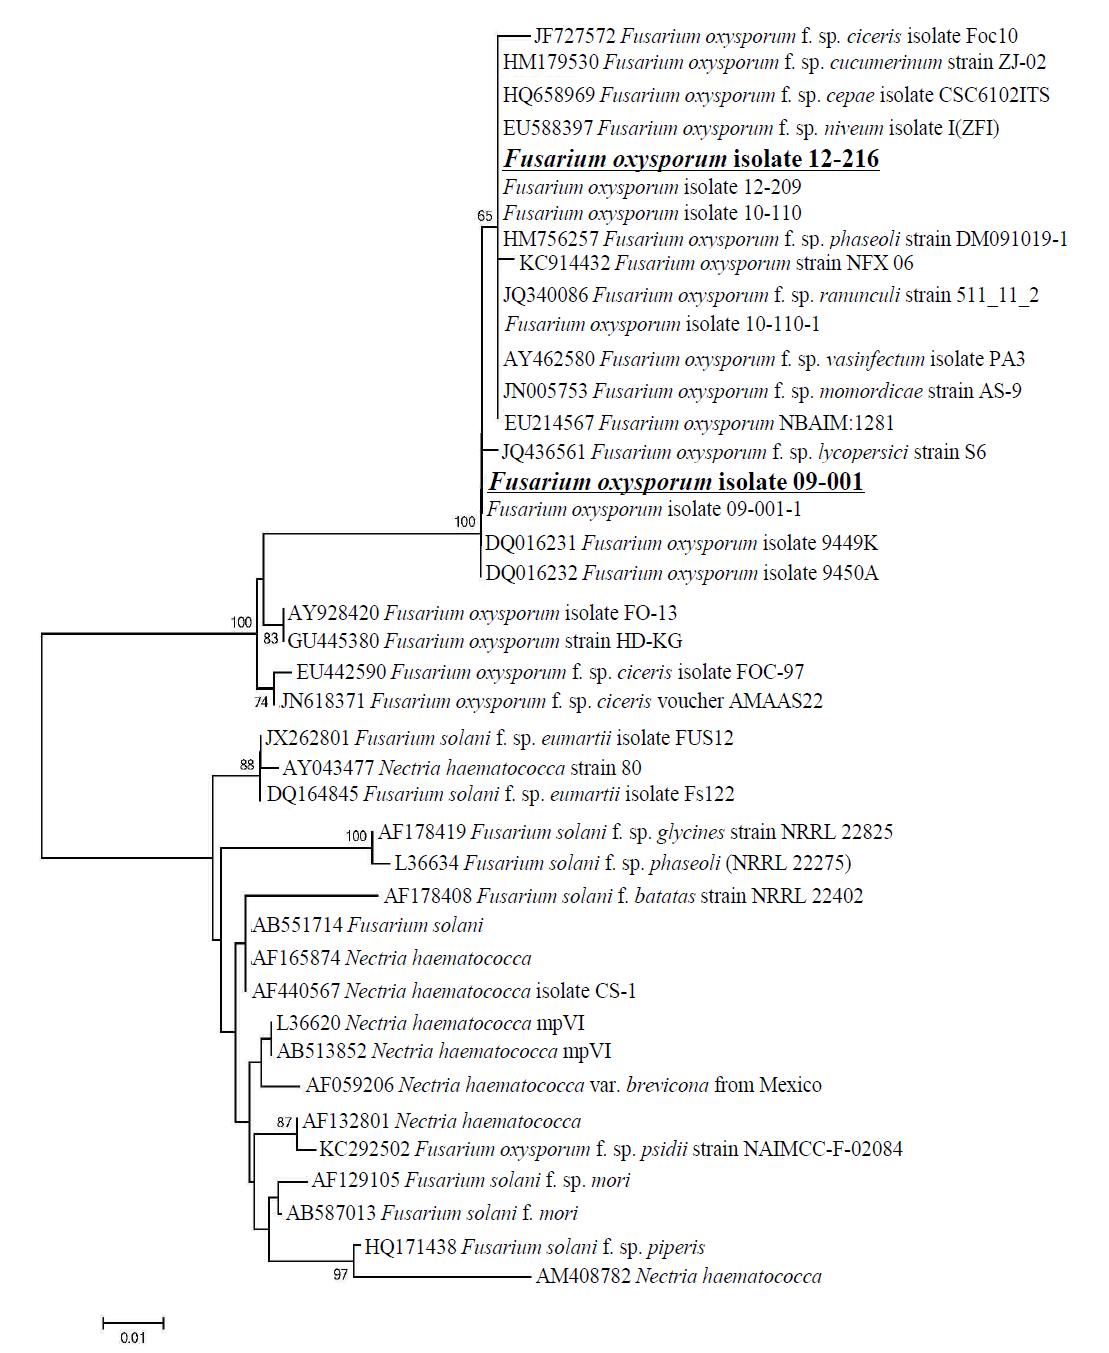 상추에서 분리한 Fusarium oxysporum isolates (12-216, 09-001) 균주의 ITS 시퀀싱에 기초한 Phylogenetic tree